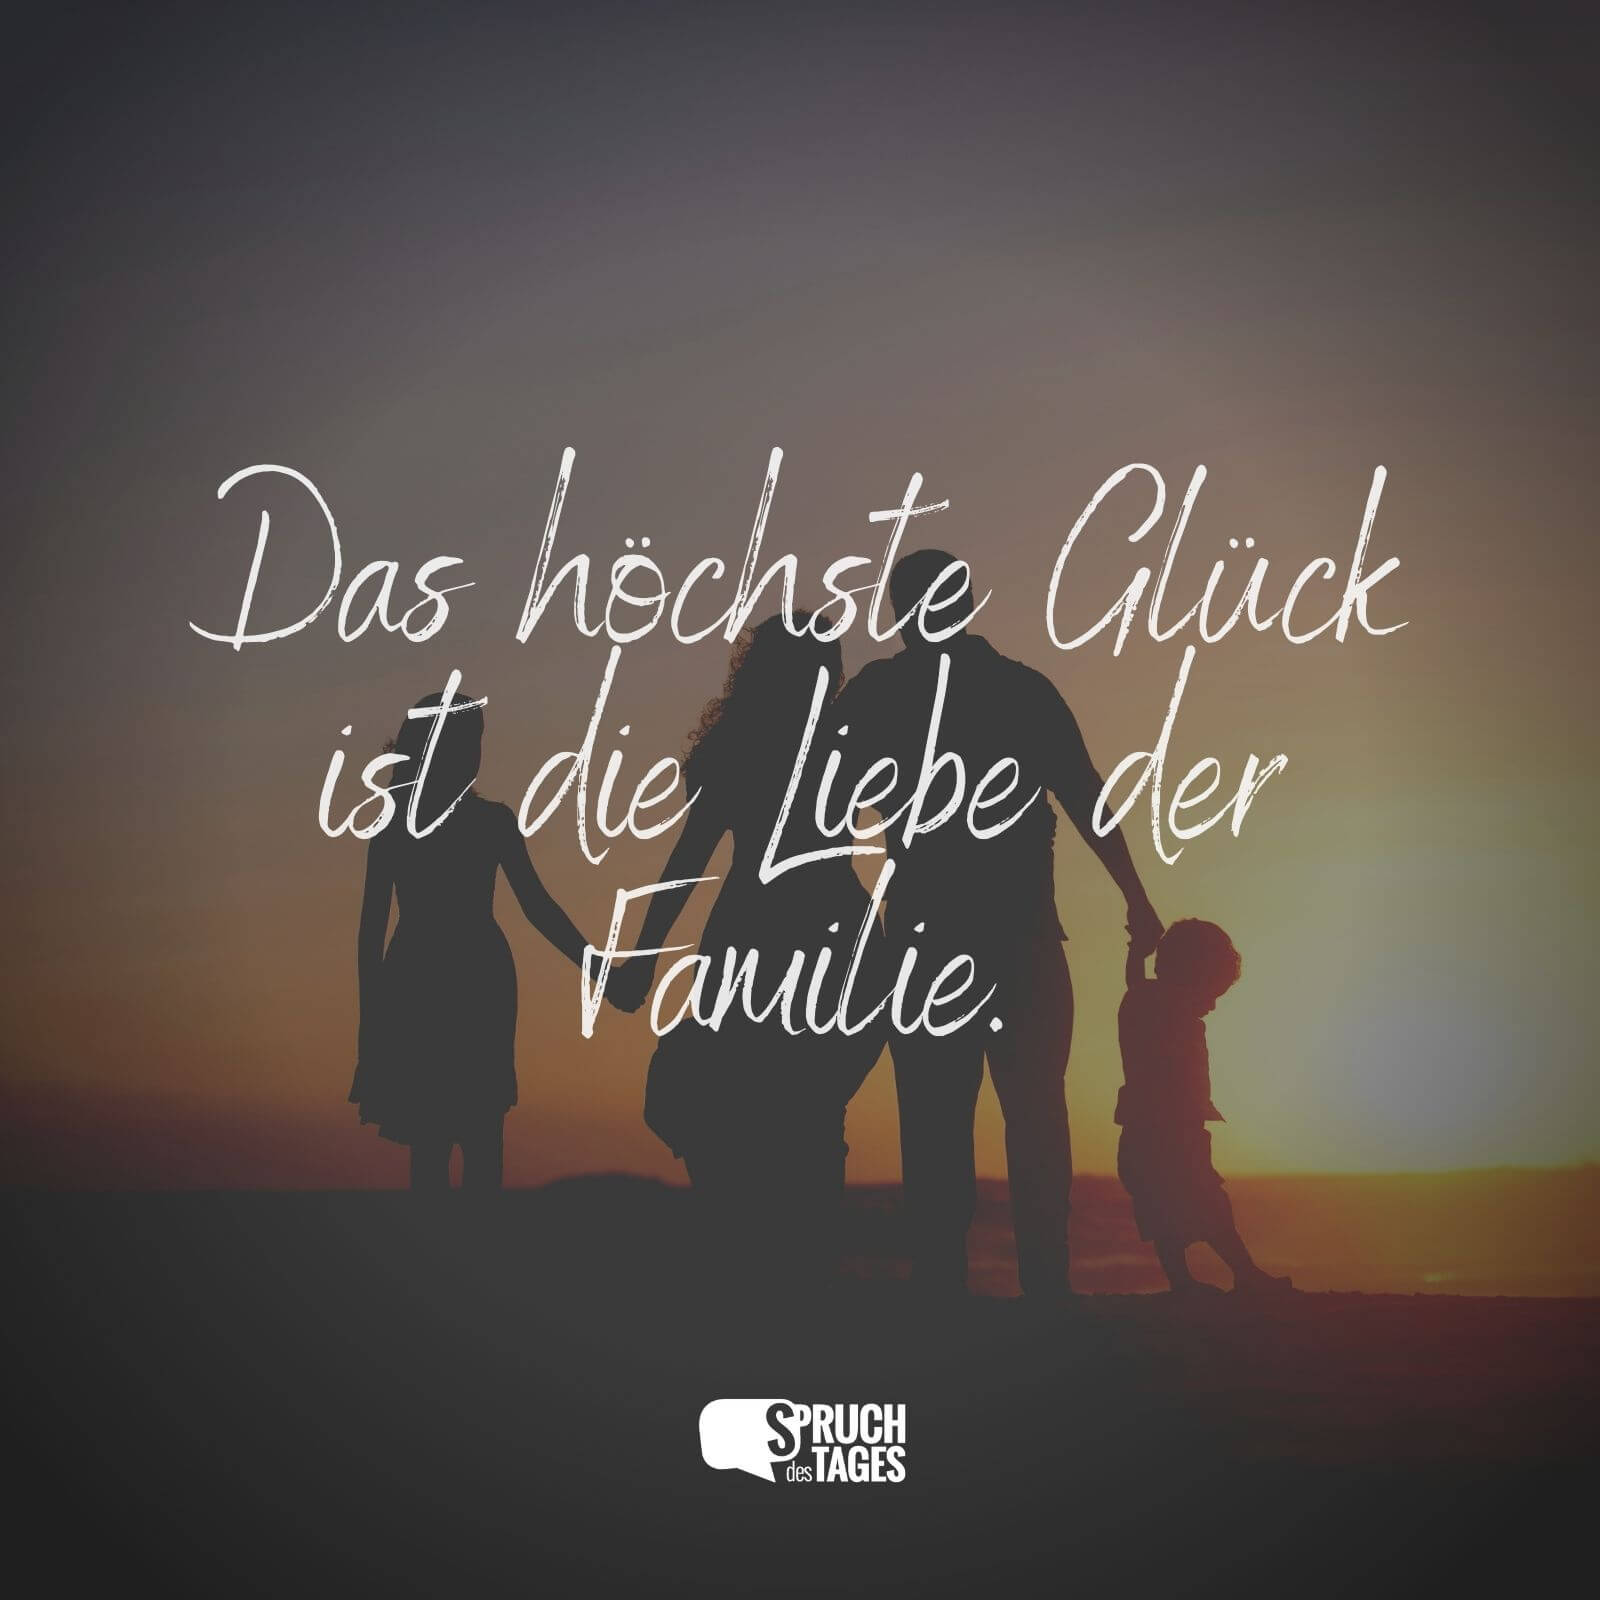 Das höchste Glück ist die Liebe der Familie.